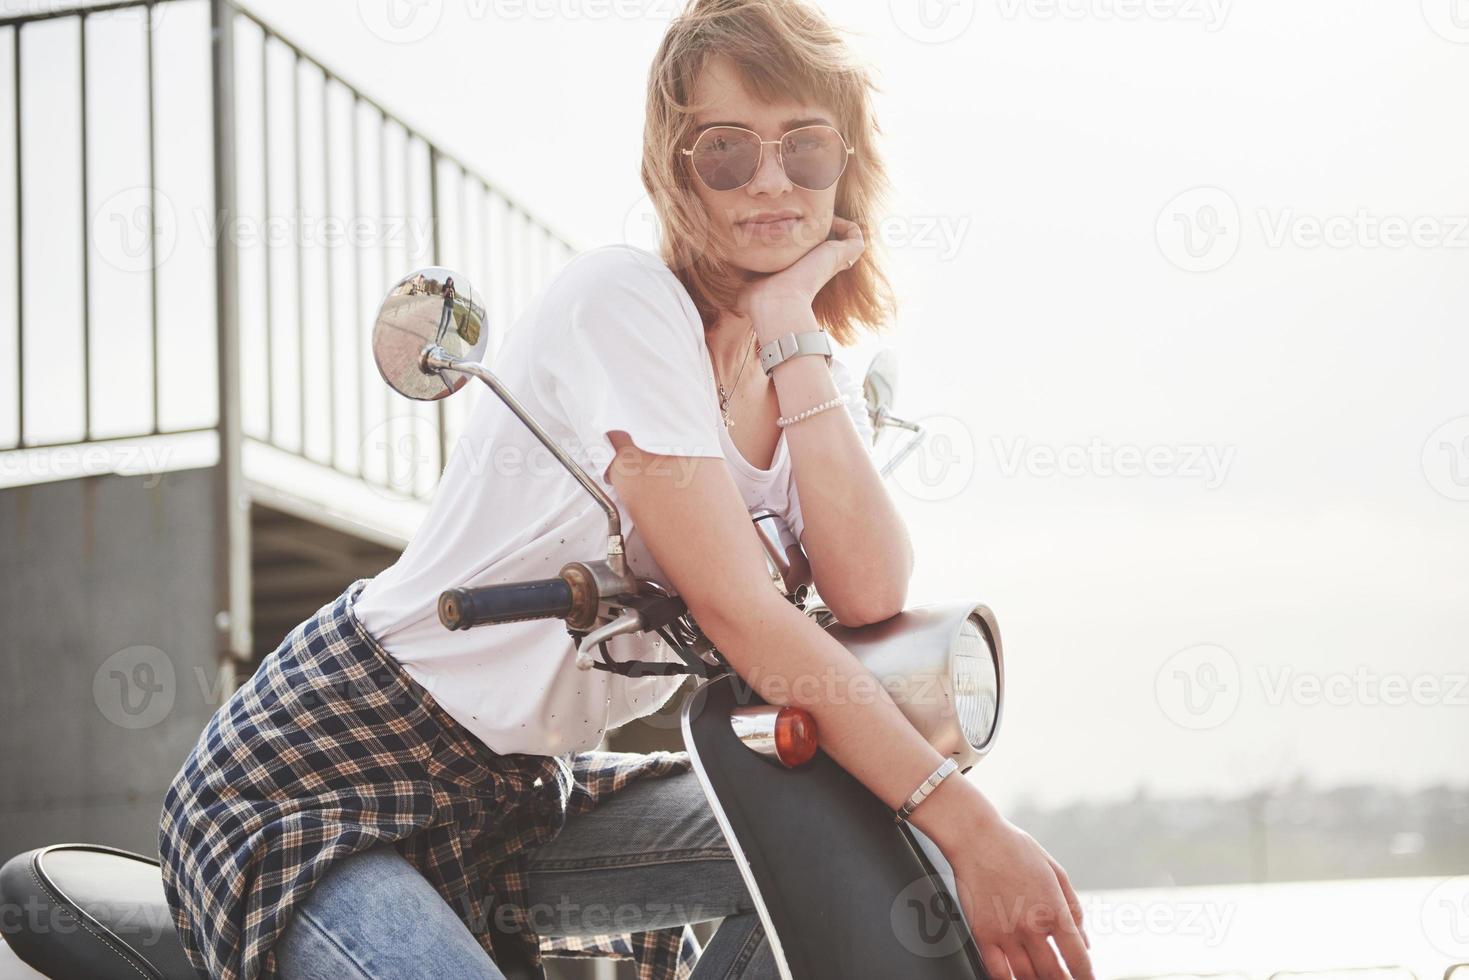 retrato de um hipster linda garota sentada em uma scooter retrô preta, sorrindo, posando e desfrutar do sol quente de primavera. foto